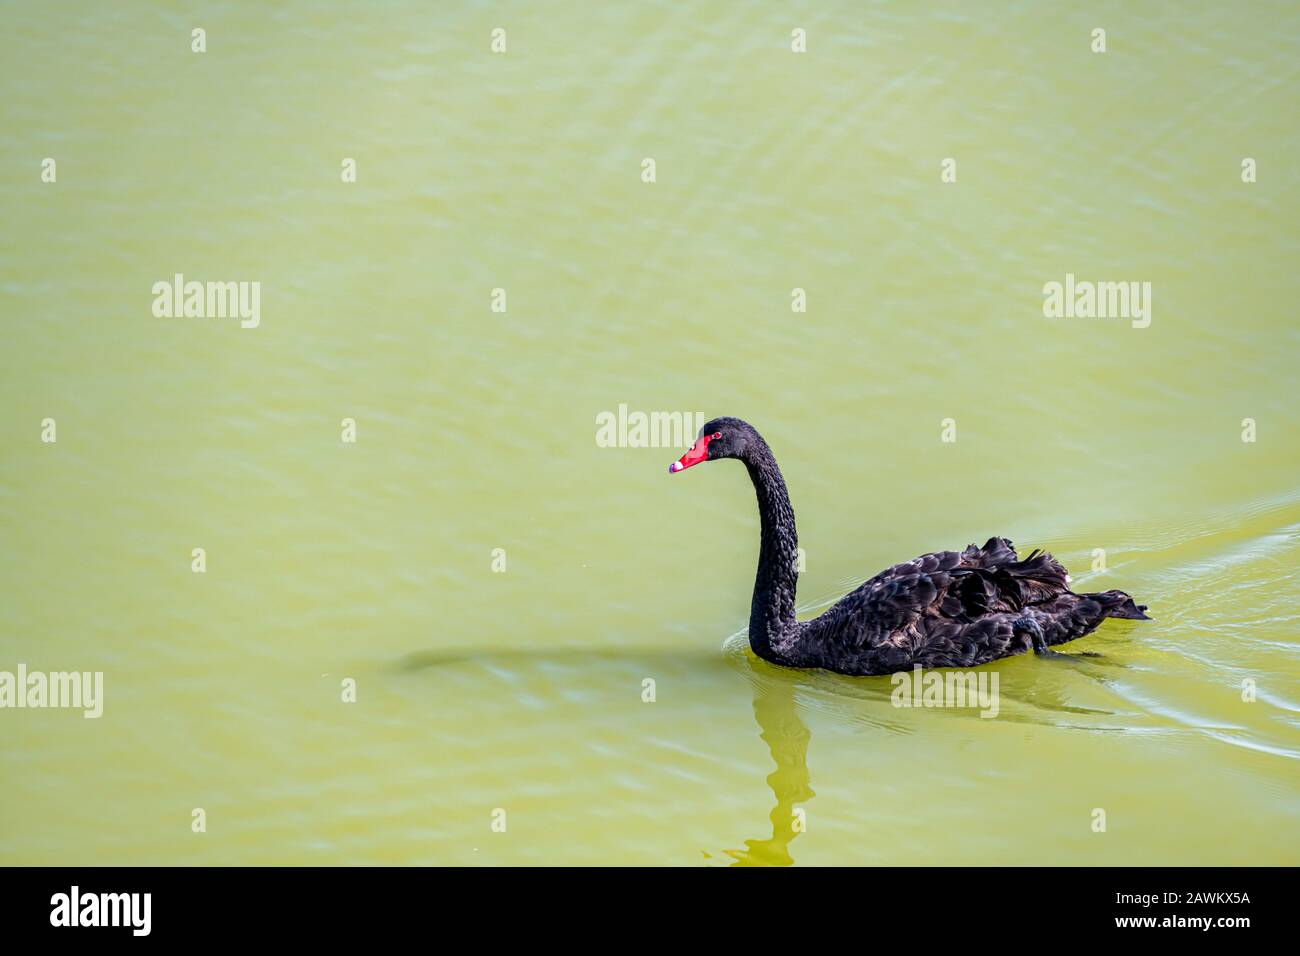 Cygne noir nageant sur l'eau verte, avec espace de copie Banque D'Images